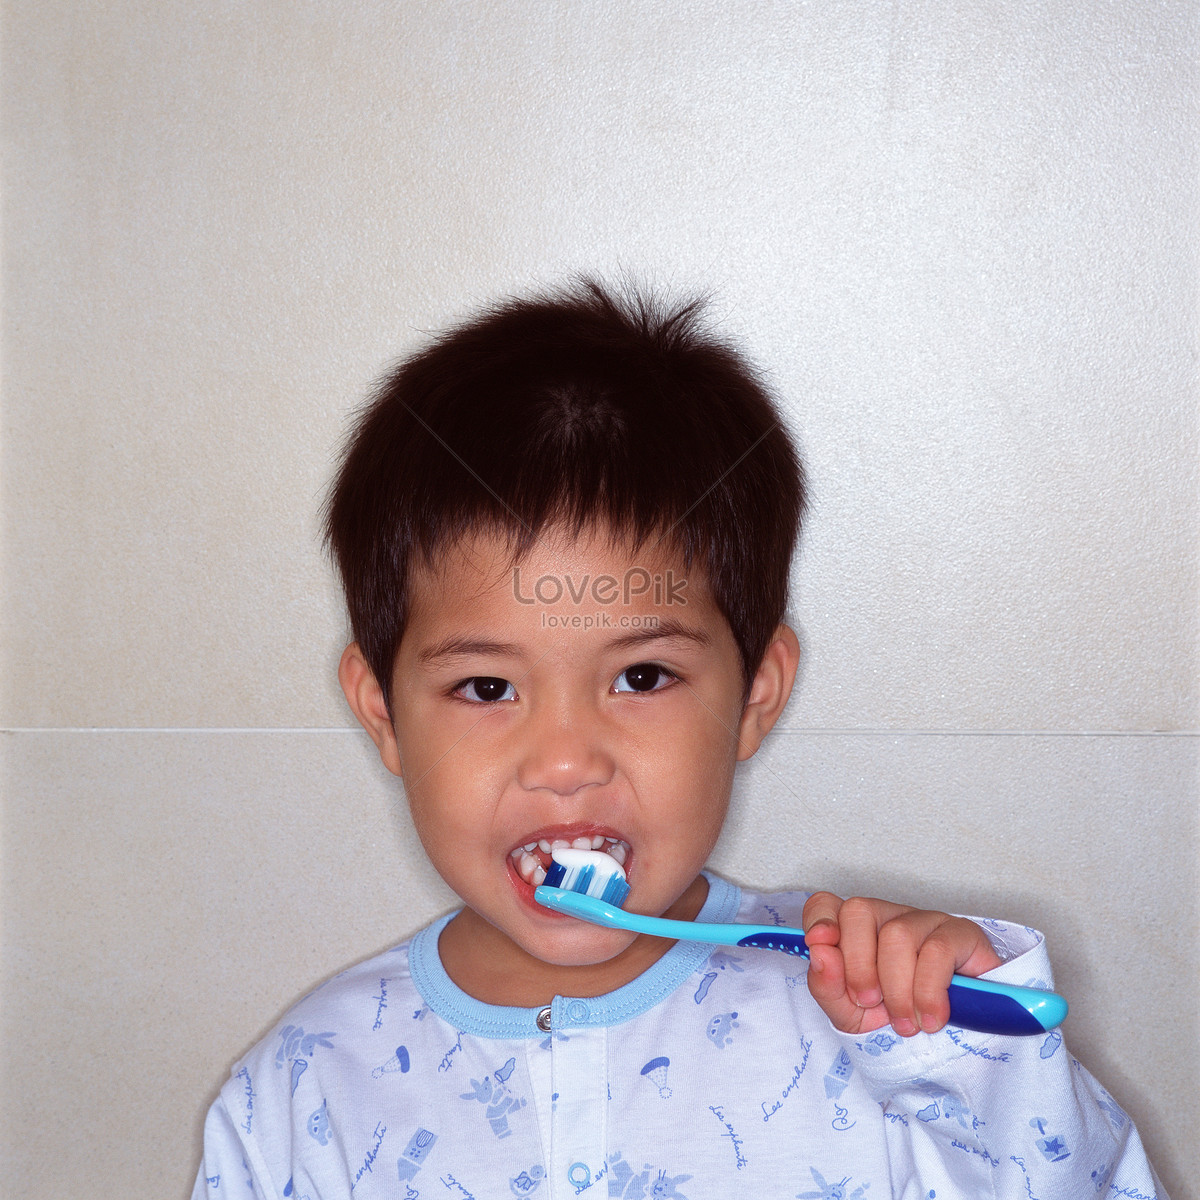 可爱的小男孩刷牙 向量例证. 插画 包括有 暂挂, 童年, 表达式, 孩子, 少许, 生活方式, 子项 - 167455790